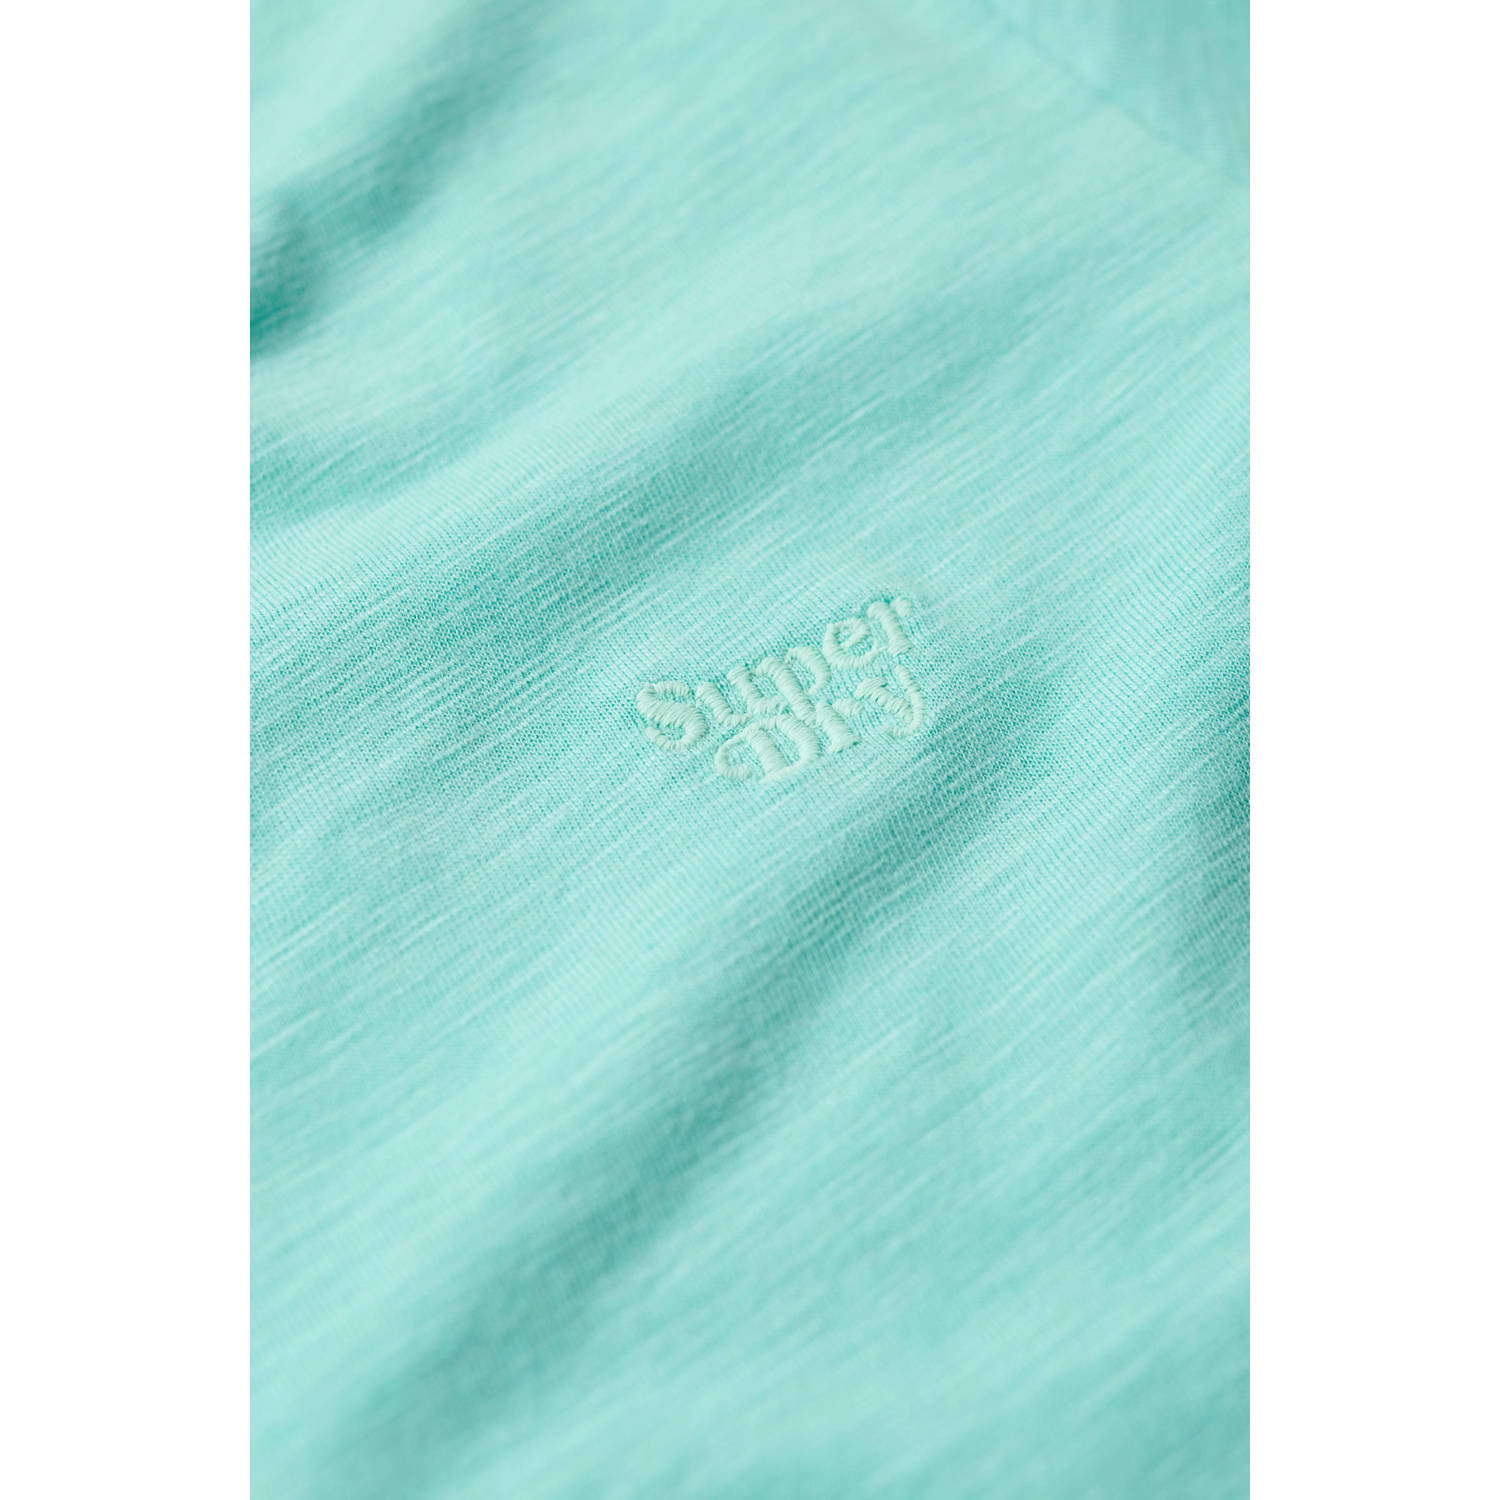 Superdry T-shirt STUDIOS SLUB EMB VEE TEE turquoise